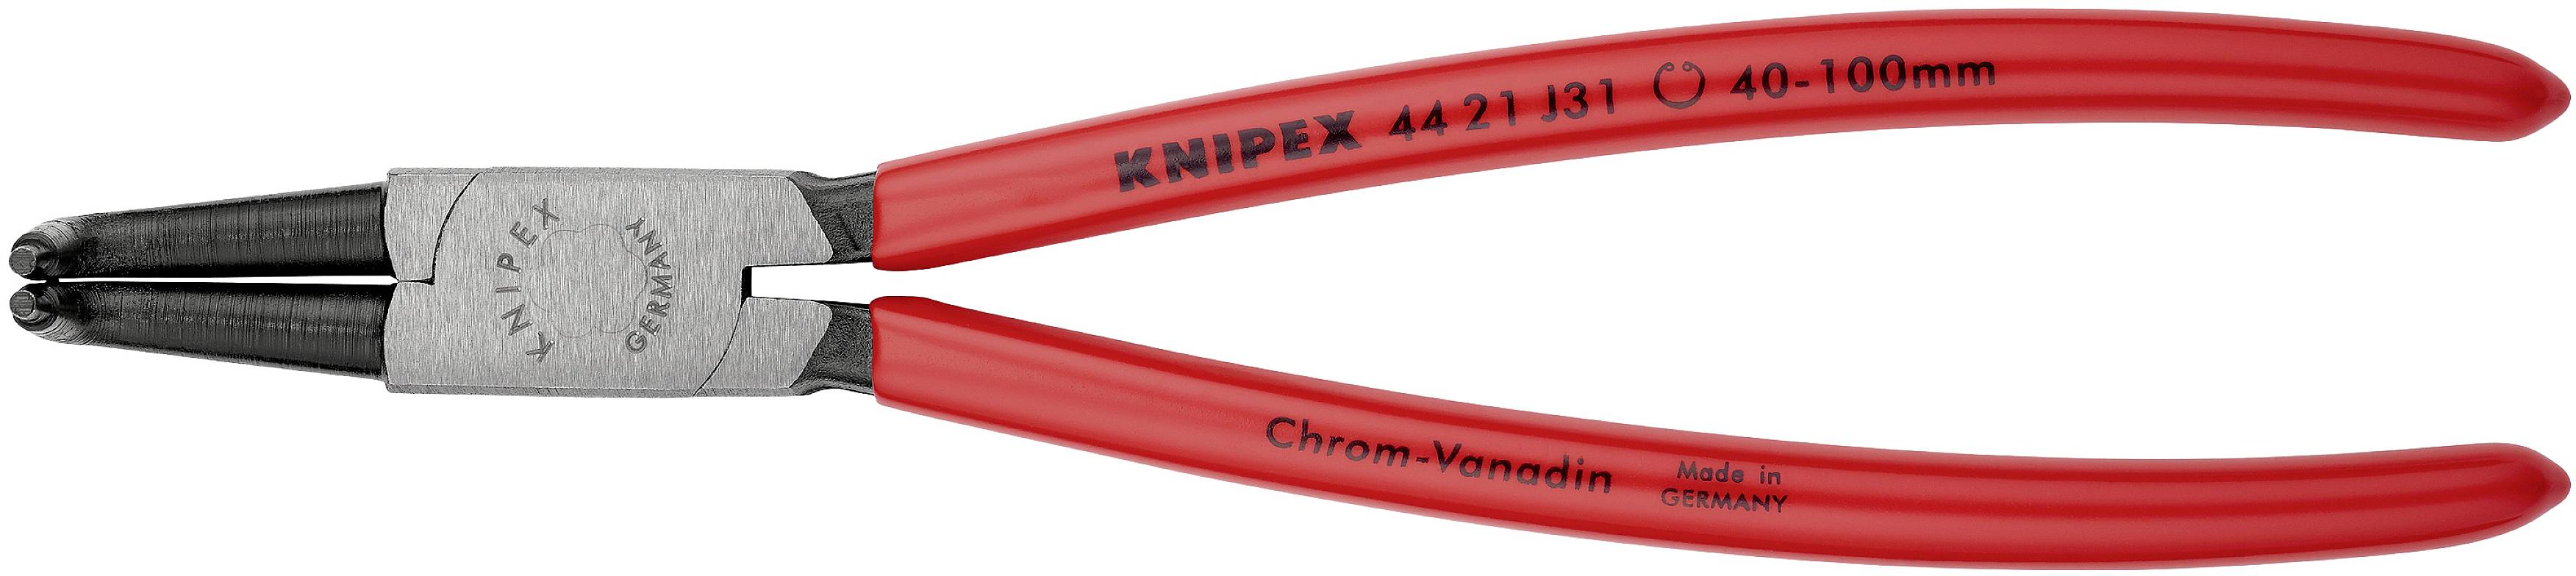 KNIPEX Seegerringzange Passend für Innenringe 40-100 mm Spitzenform abgewinkelt 90° 44 21 J31 (44 21